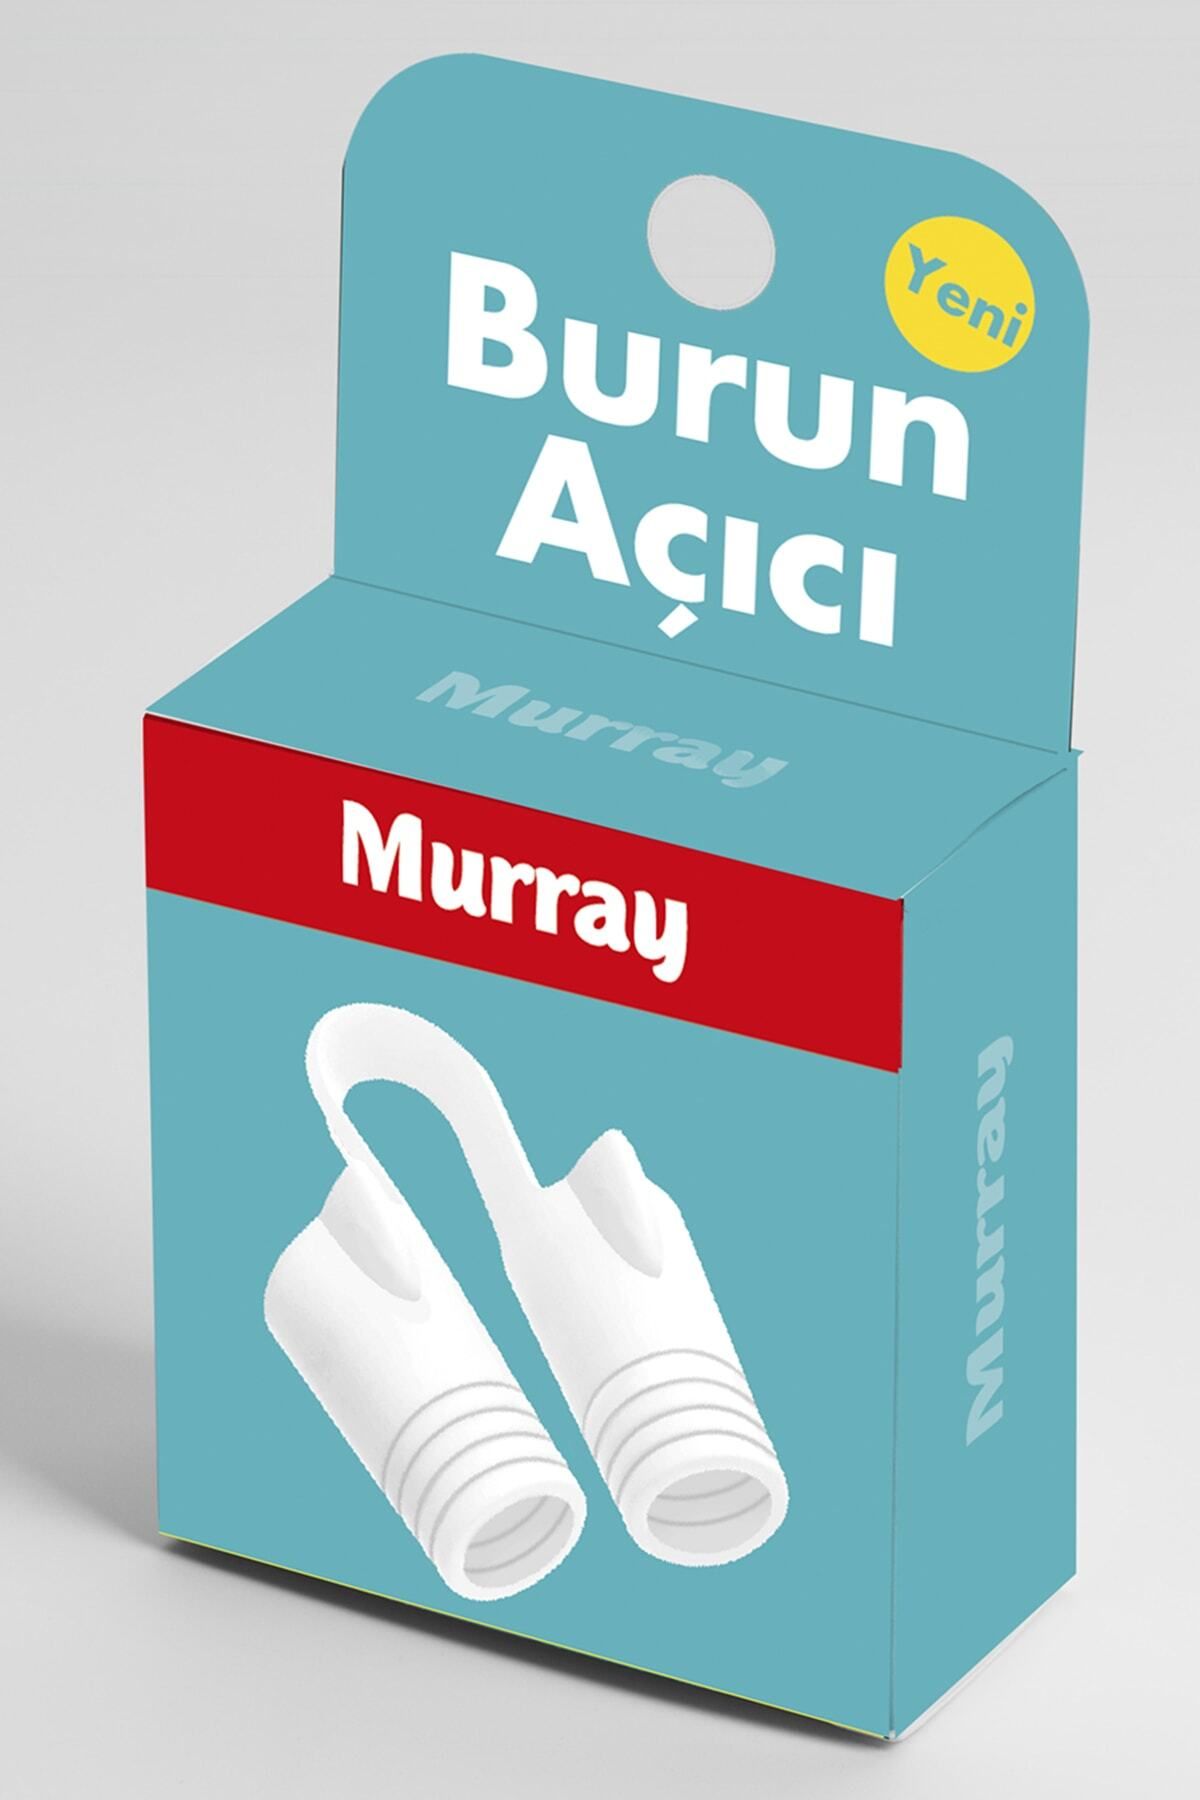 Murray Burun Açıcı Aparat - Horlama Önlemeye Yardımcı 3'lü Kutu Orta Boy